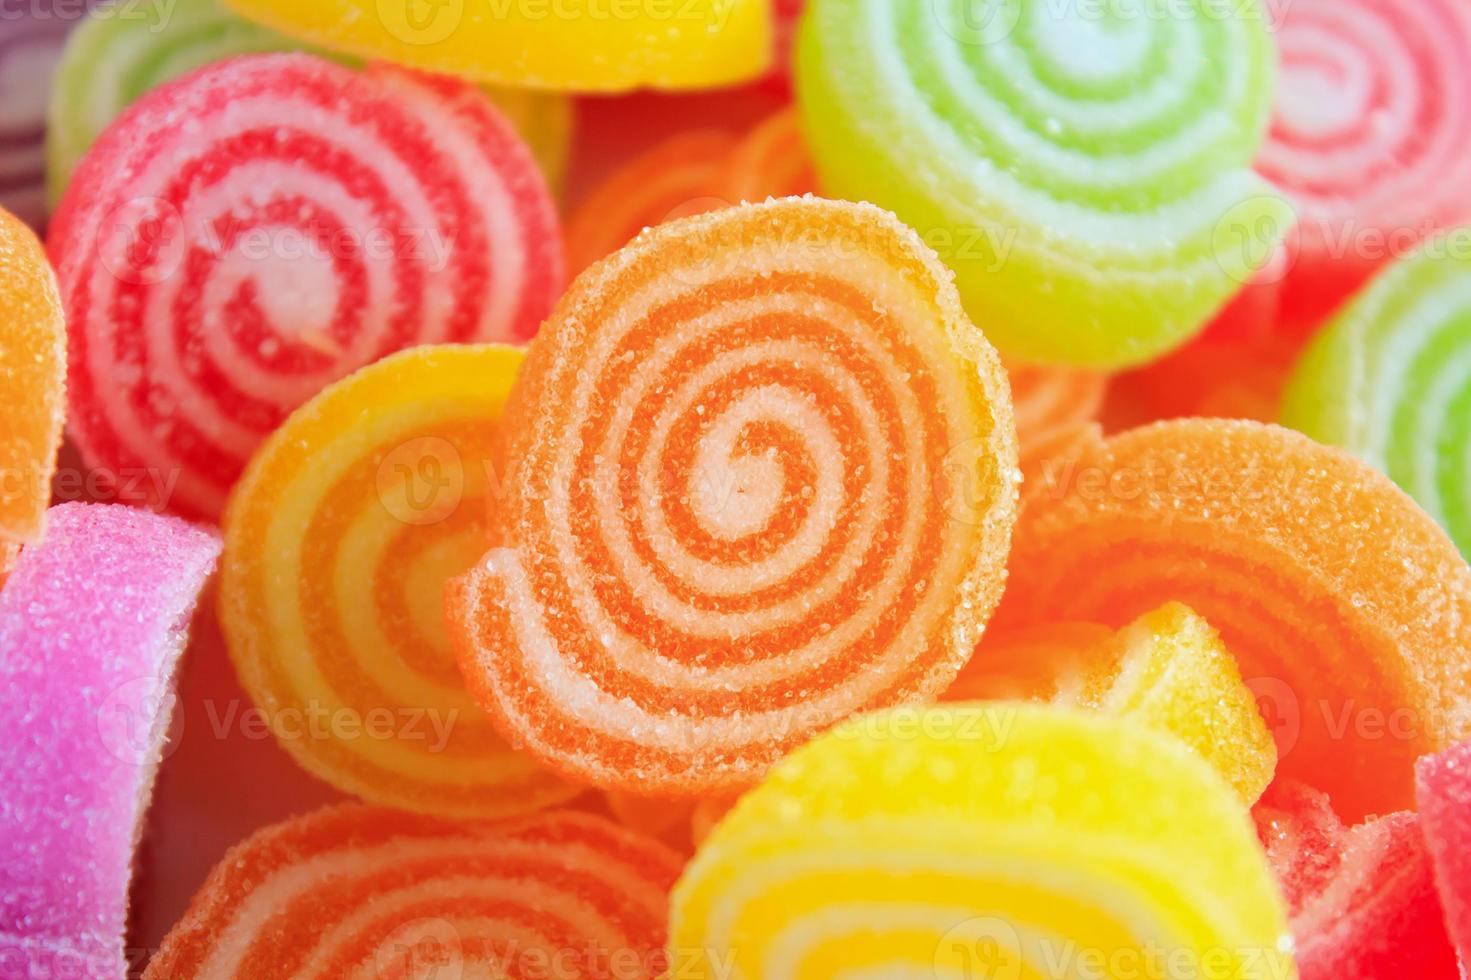 doces de gelatina doce coloridos foto